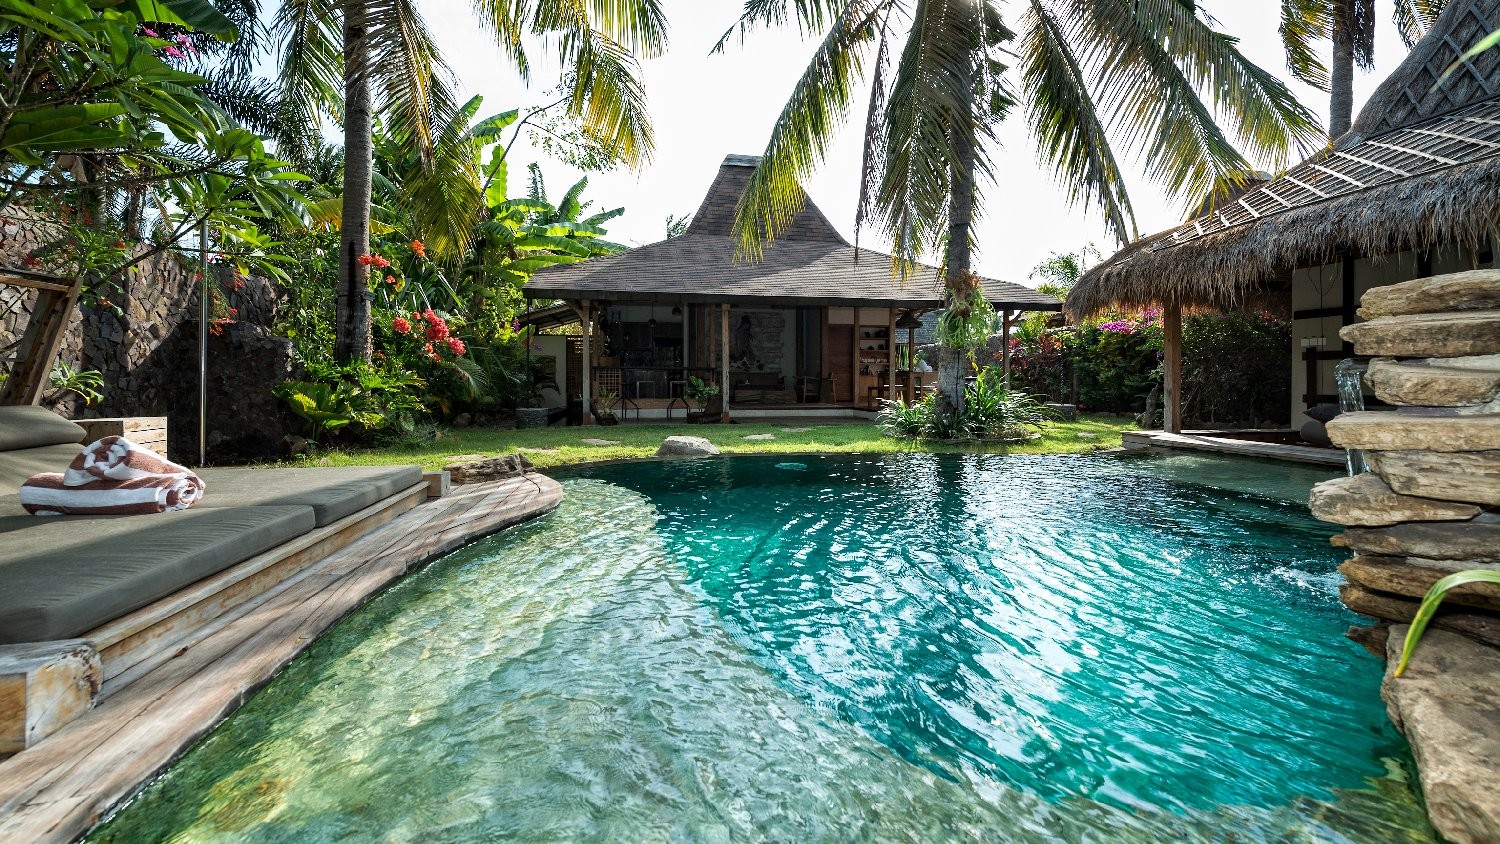 Villa Bhuvana in Gili islands, Bali (1 bedrooms) - Best Price & Reviews!